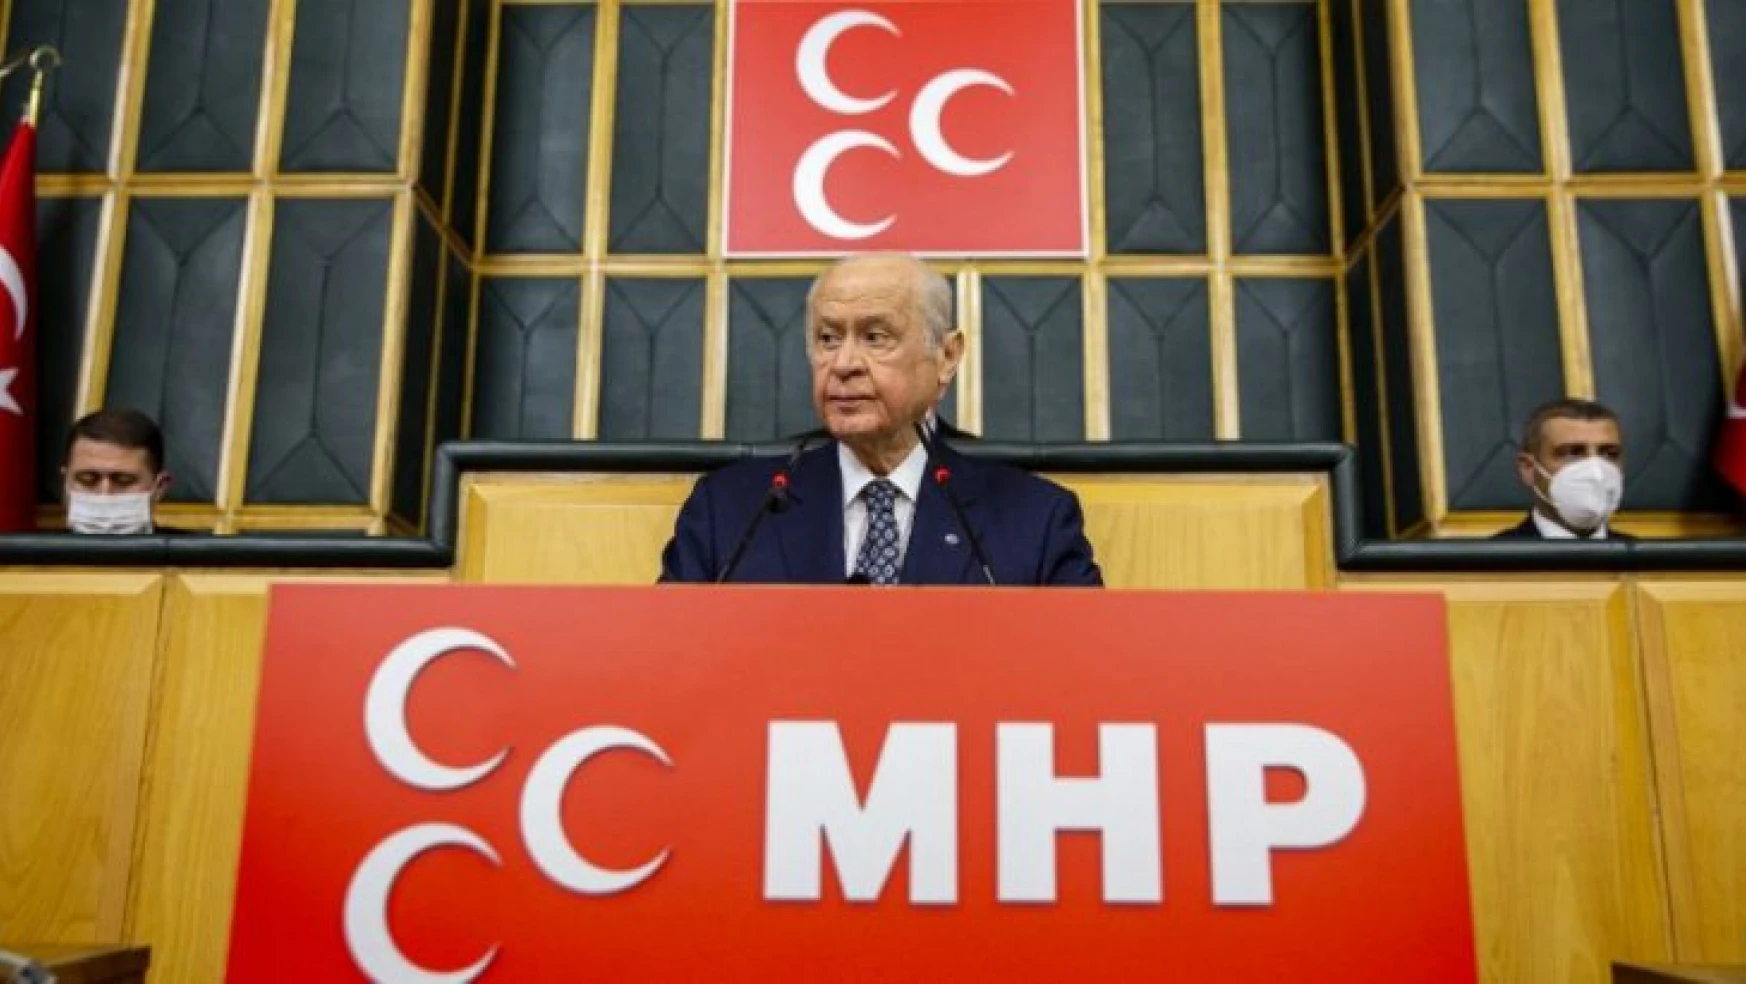 MHP Lideri Bahçeli: Buça'da katliam varsa sorumlularından hesap sorulmalı